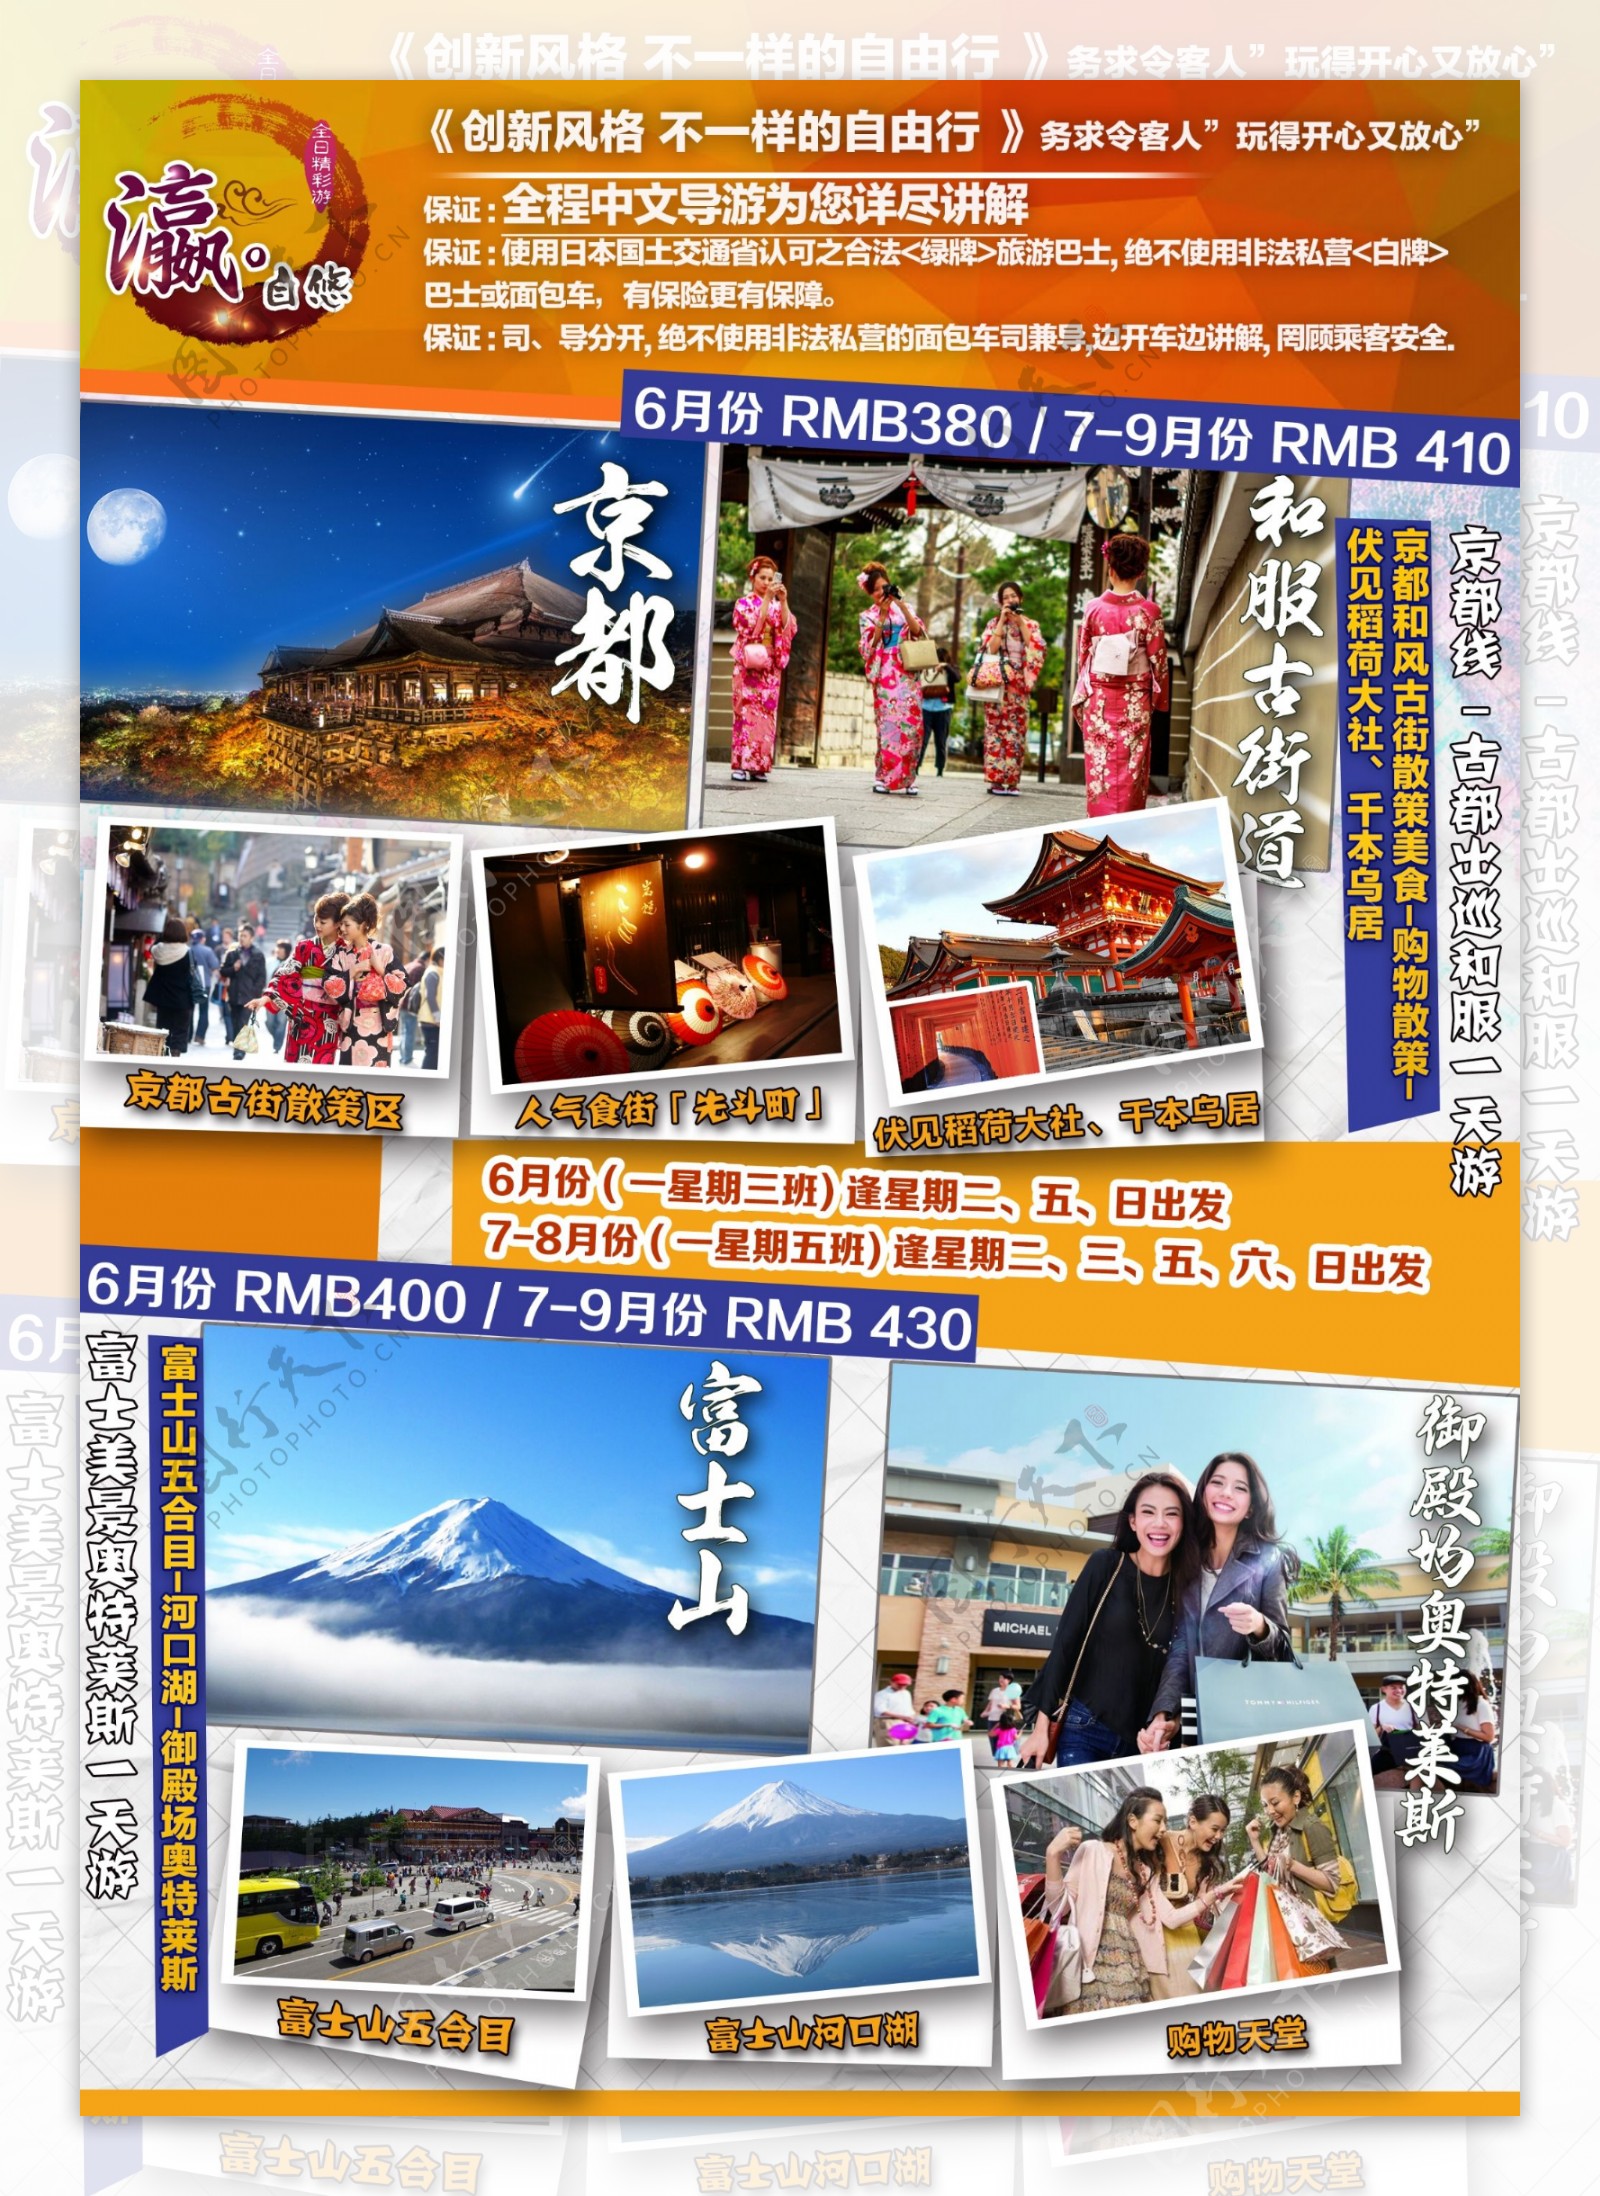 一天游富士山宣传彩图